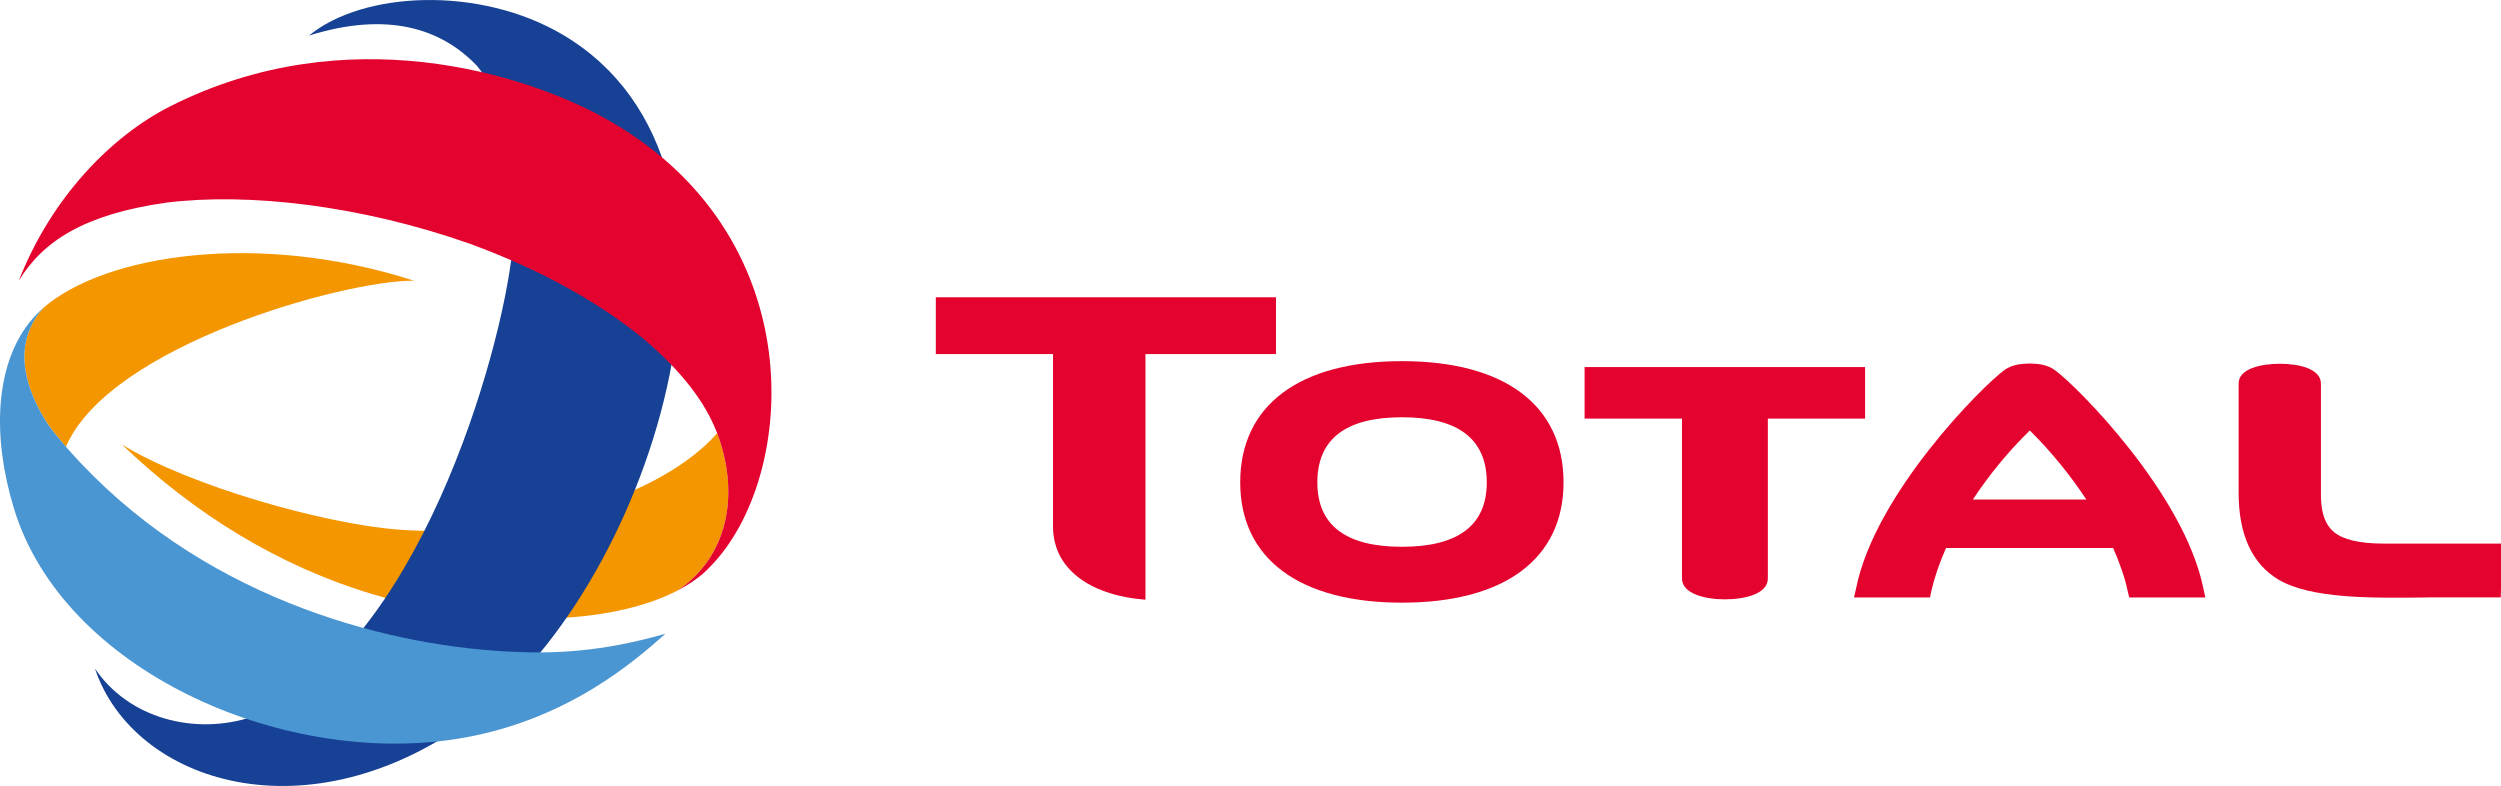 TOTAL_SA_logo